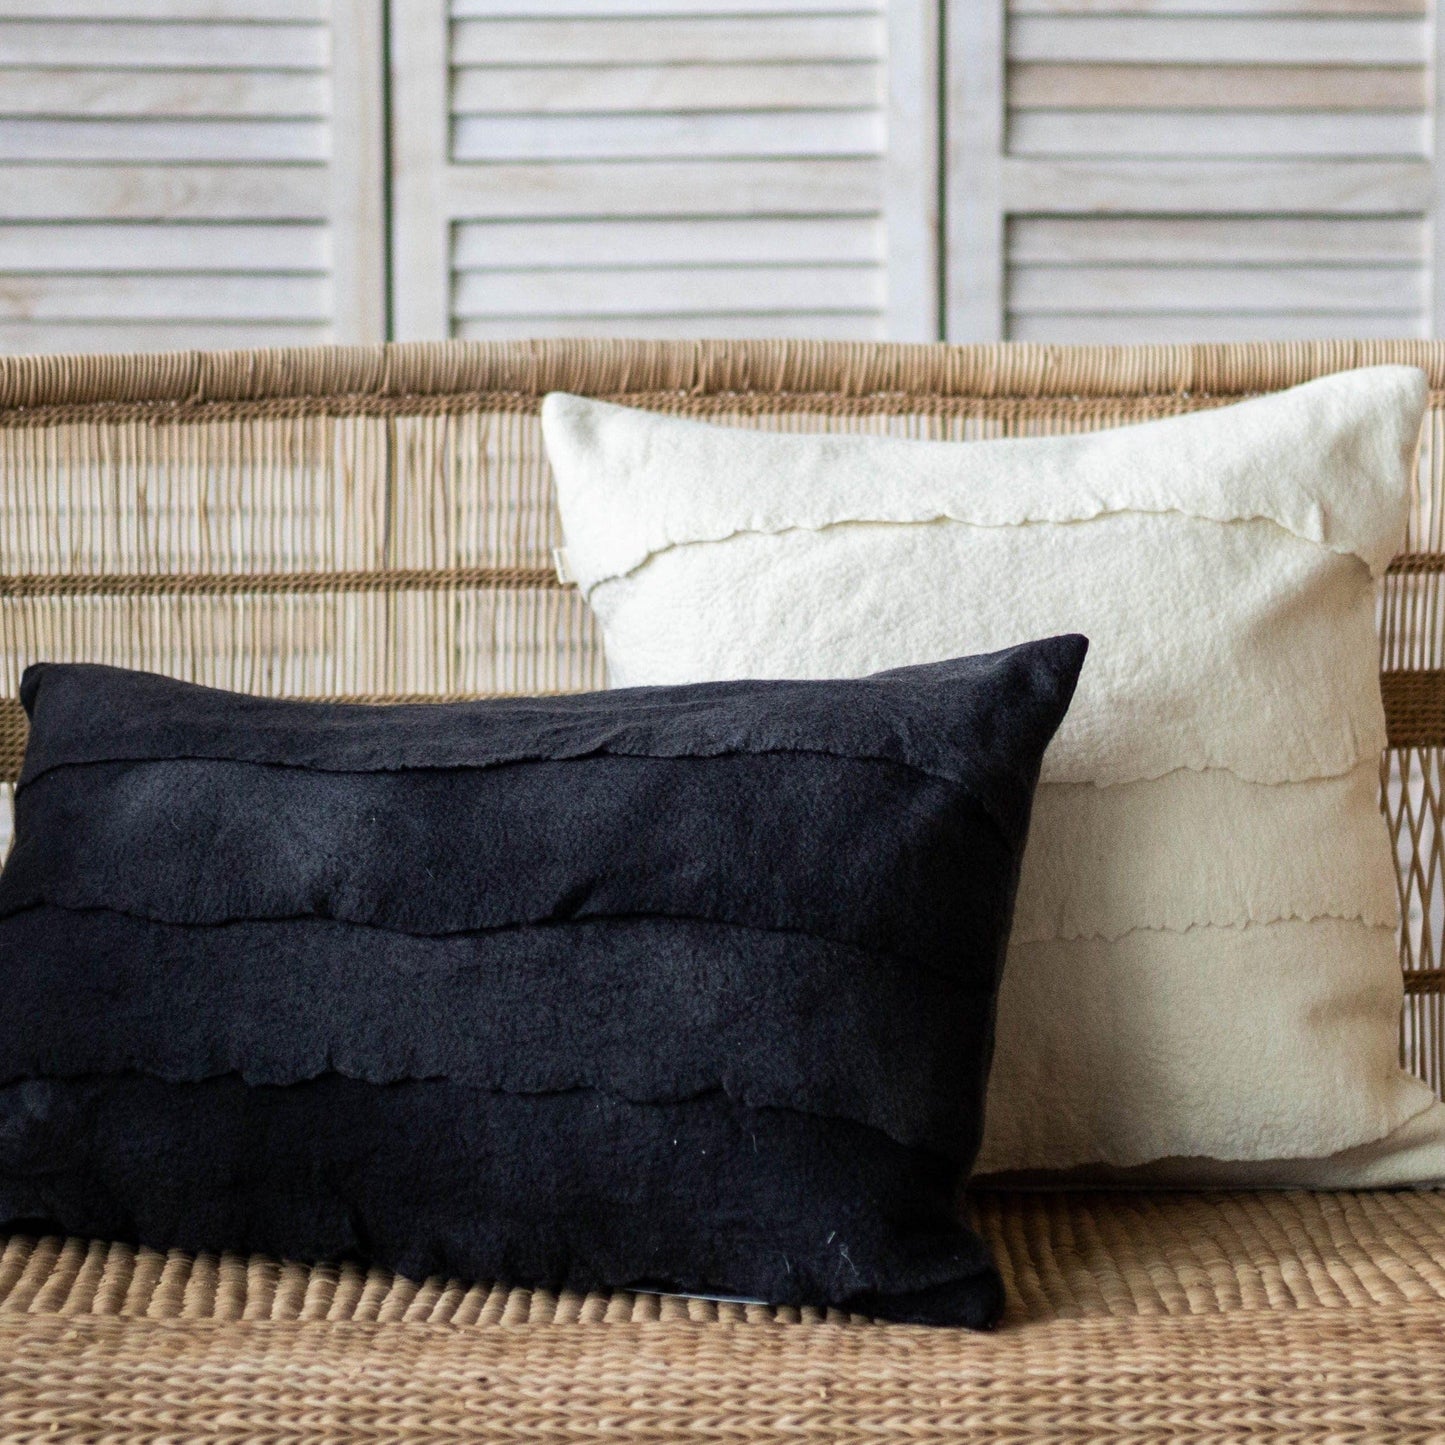 Layered Merino Wool Throw Pillow Black & White